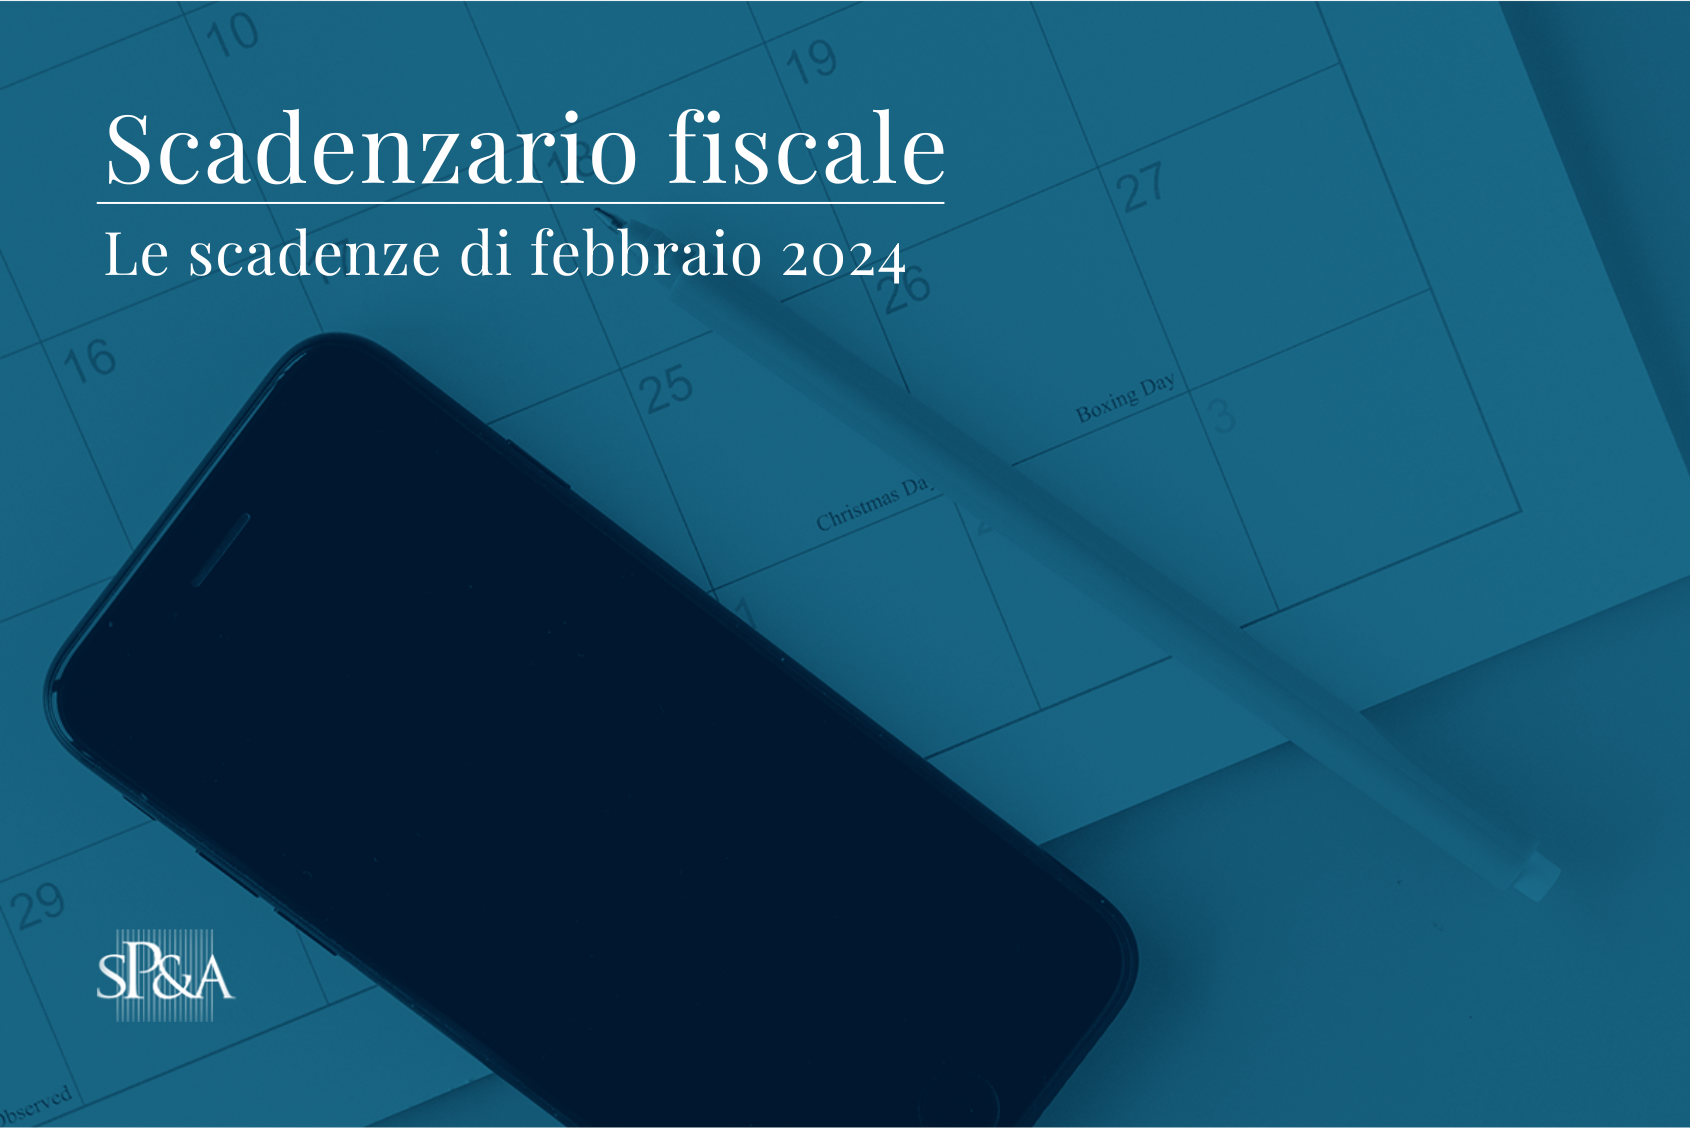 Scadenzario fiscale febbraio 2024